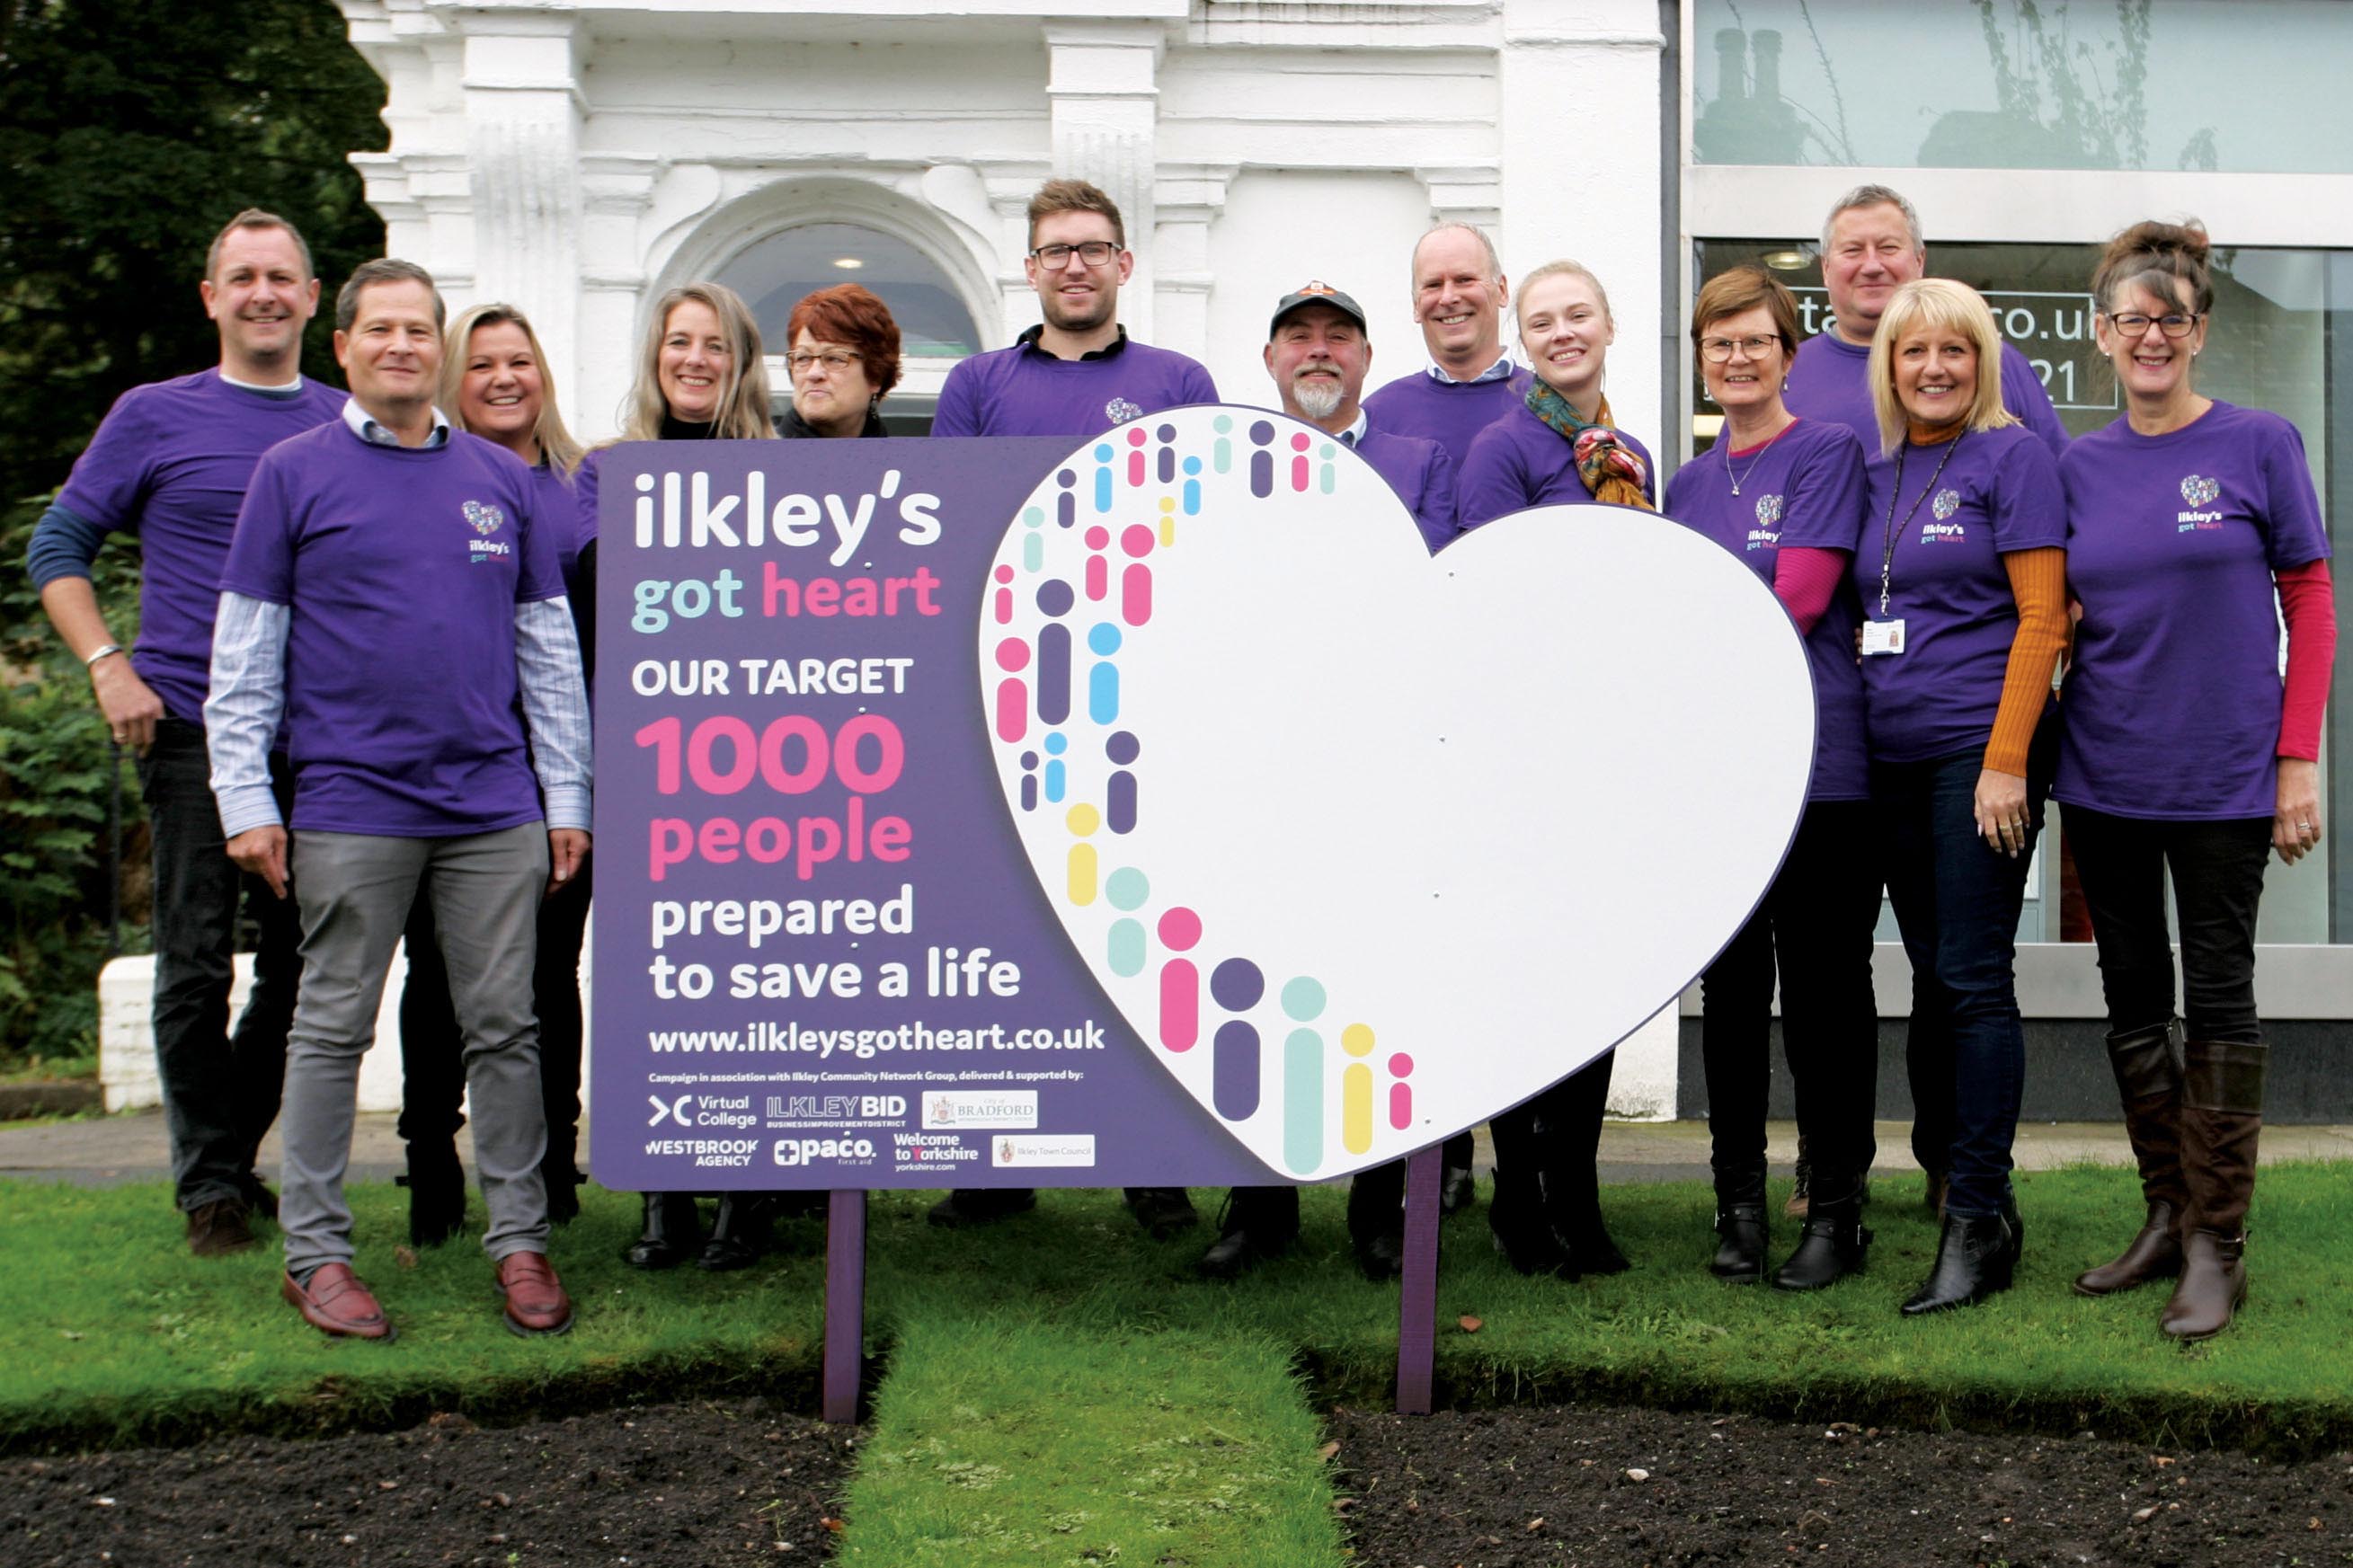 Ilkley's got heart campaign